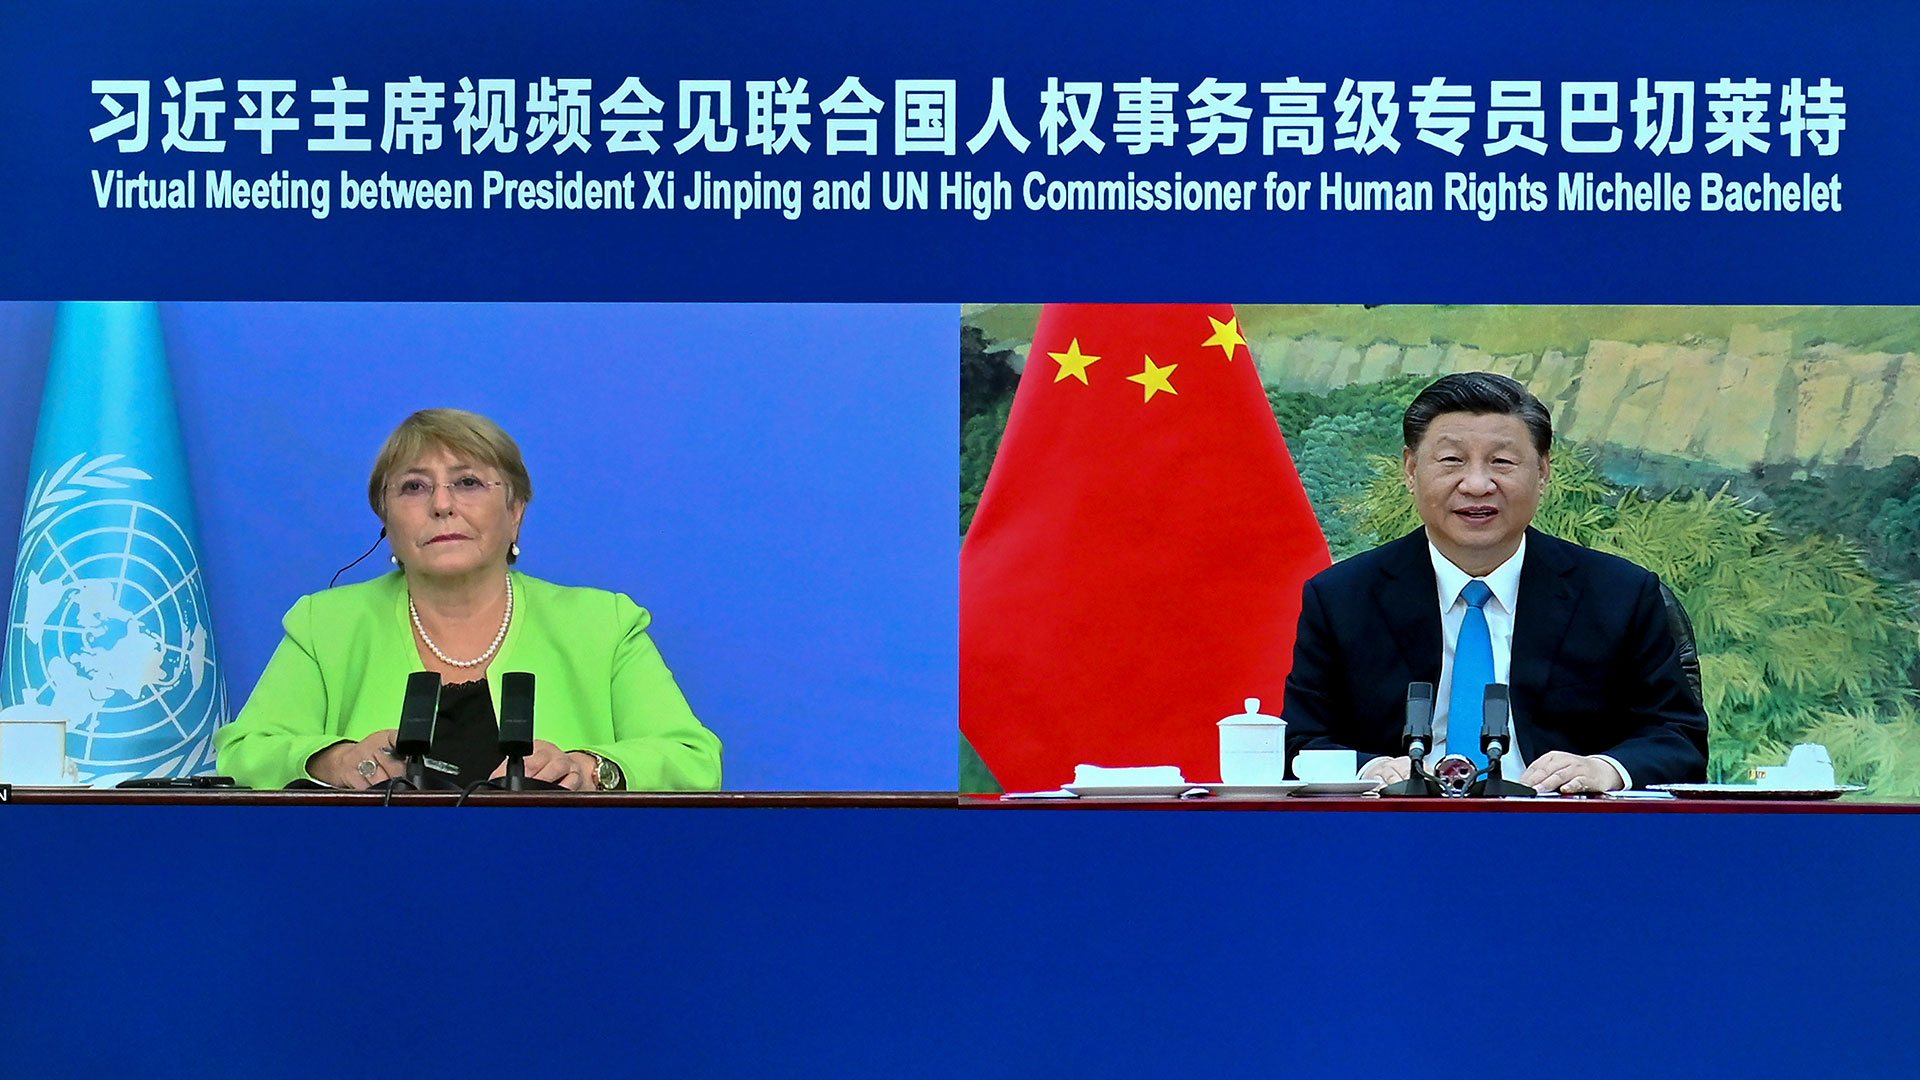 Estados Unidos denunció los esfuerzos de China por restringir y manipular la visita de Bachelet a Xinjiang